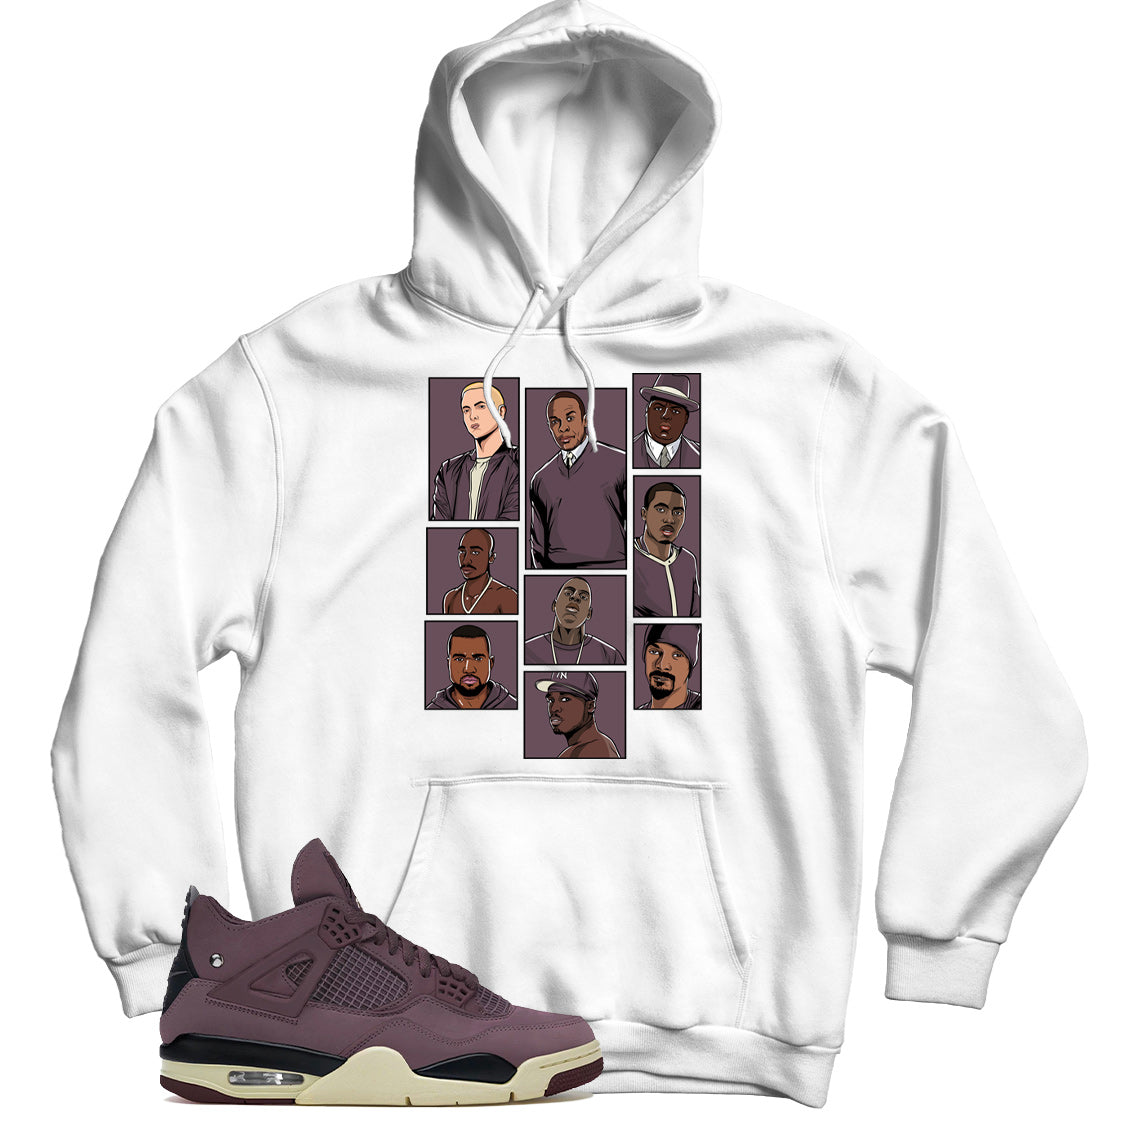 Jordan 4 Violet Ore hoodie